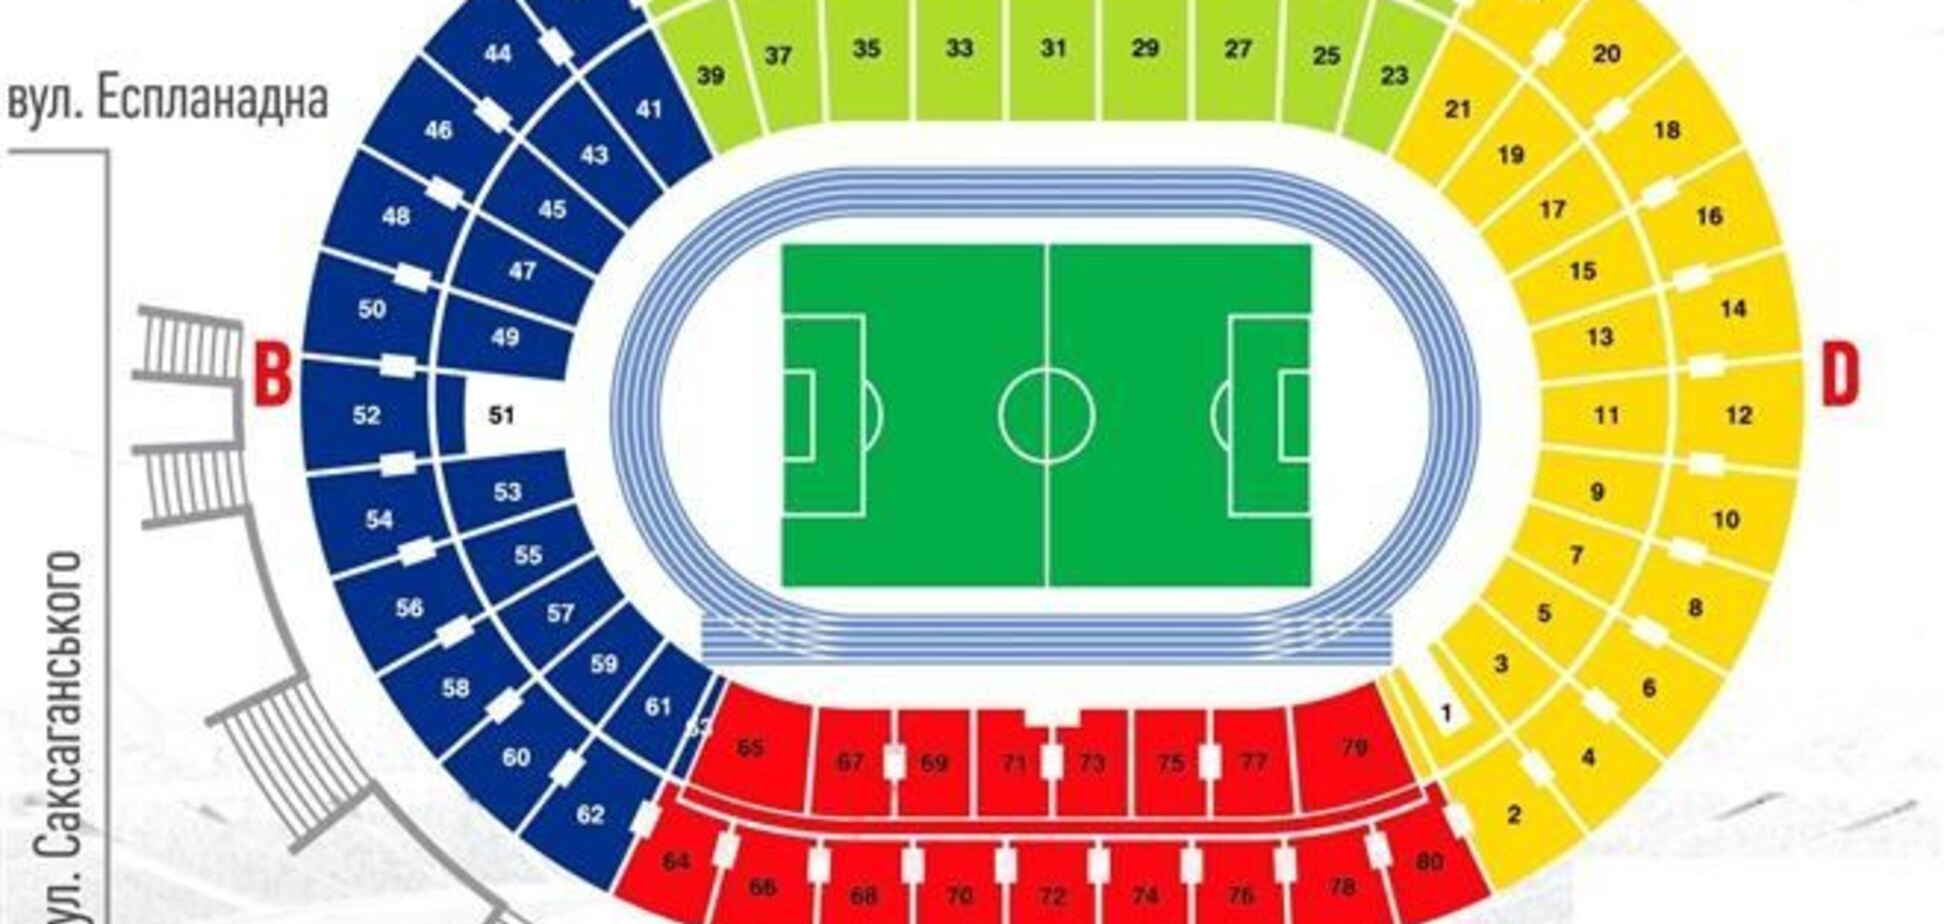 Продажа билетов на матч Украина - Франция временно приостановлена